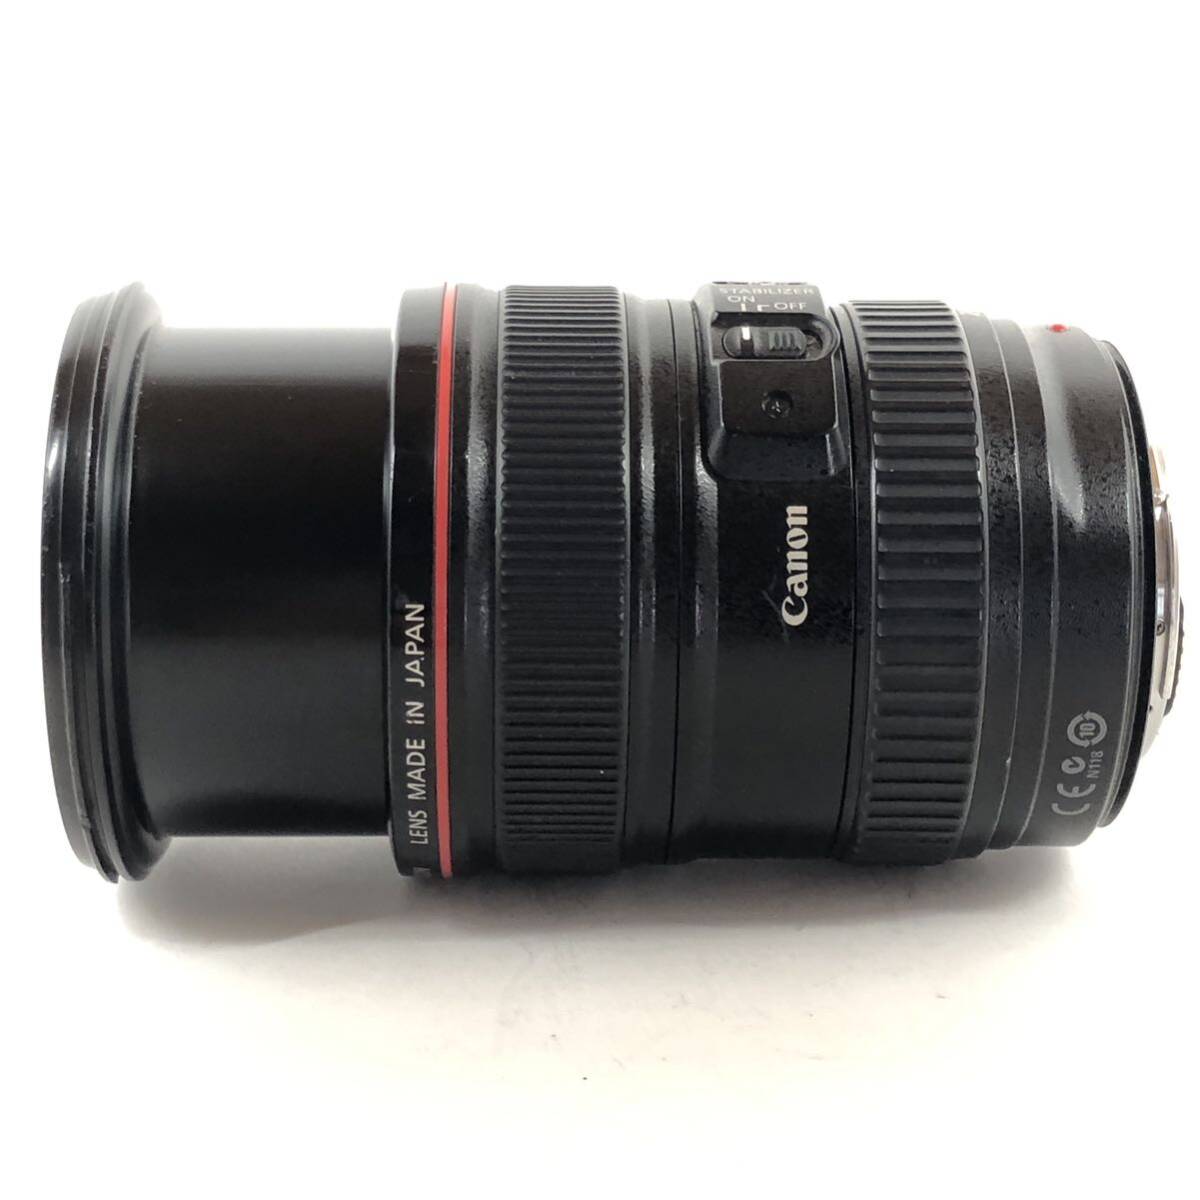 Canon キャノン EF 24-105mm f4 L IS USM 標準ズームレンズ #8704_画像4